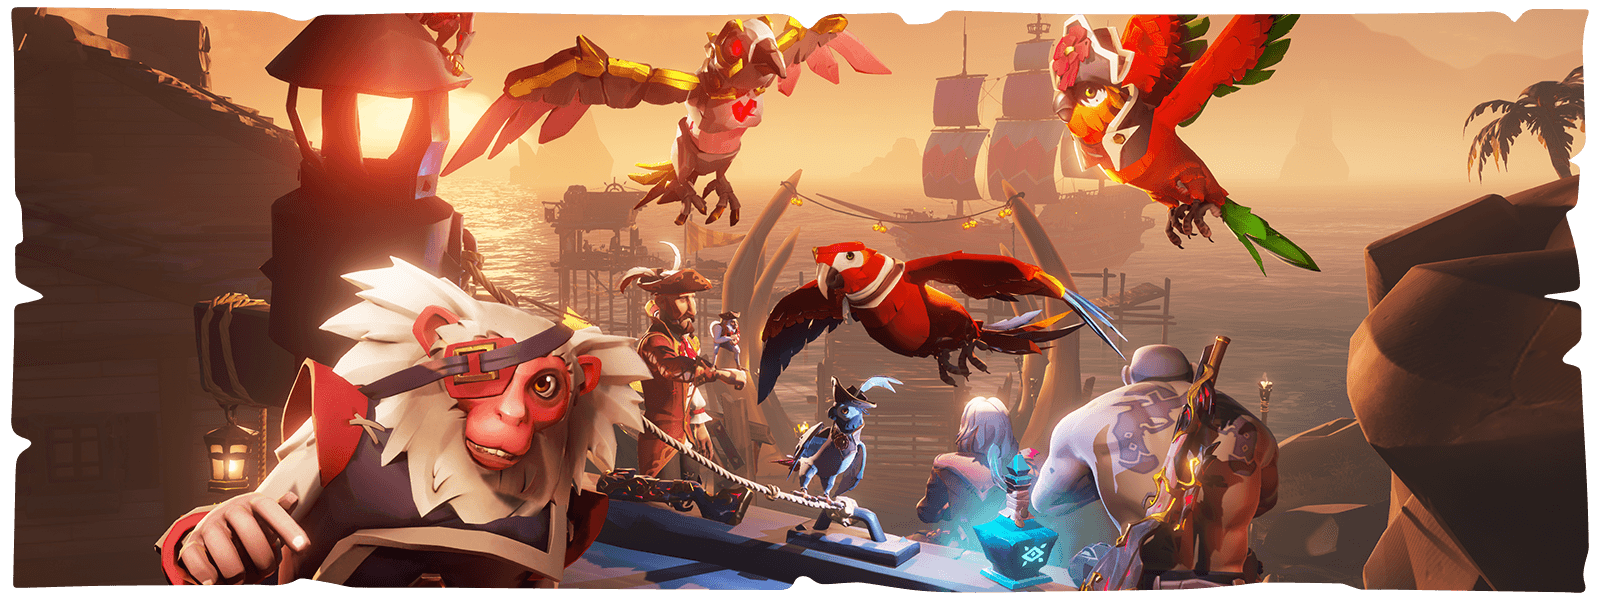 Personajes, loros y un mono frente a un puerto de Sea of Thieves